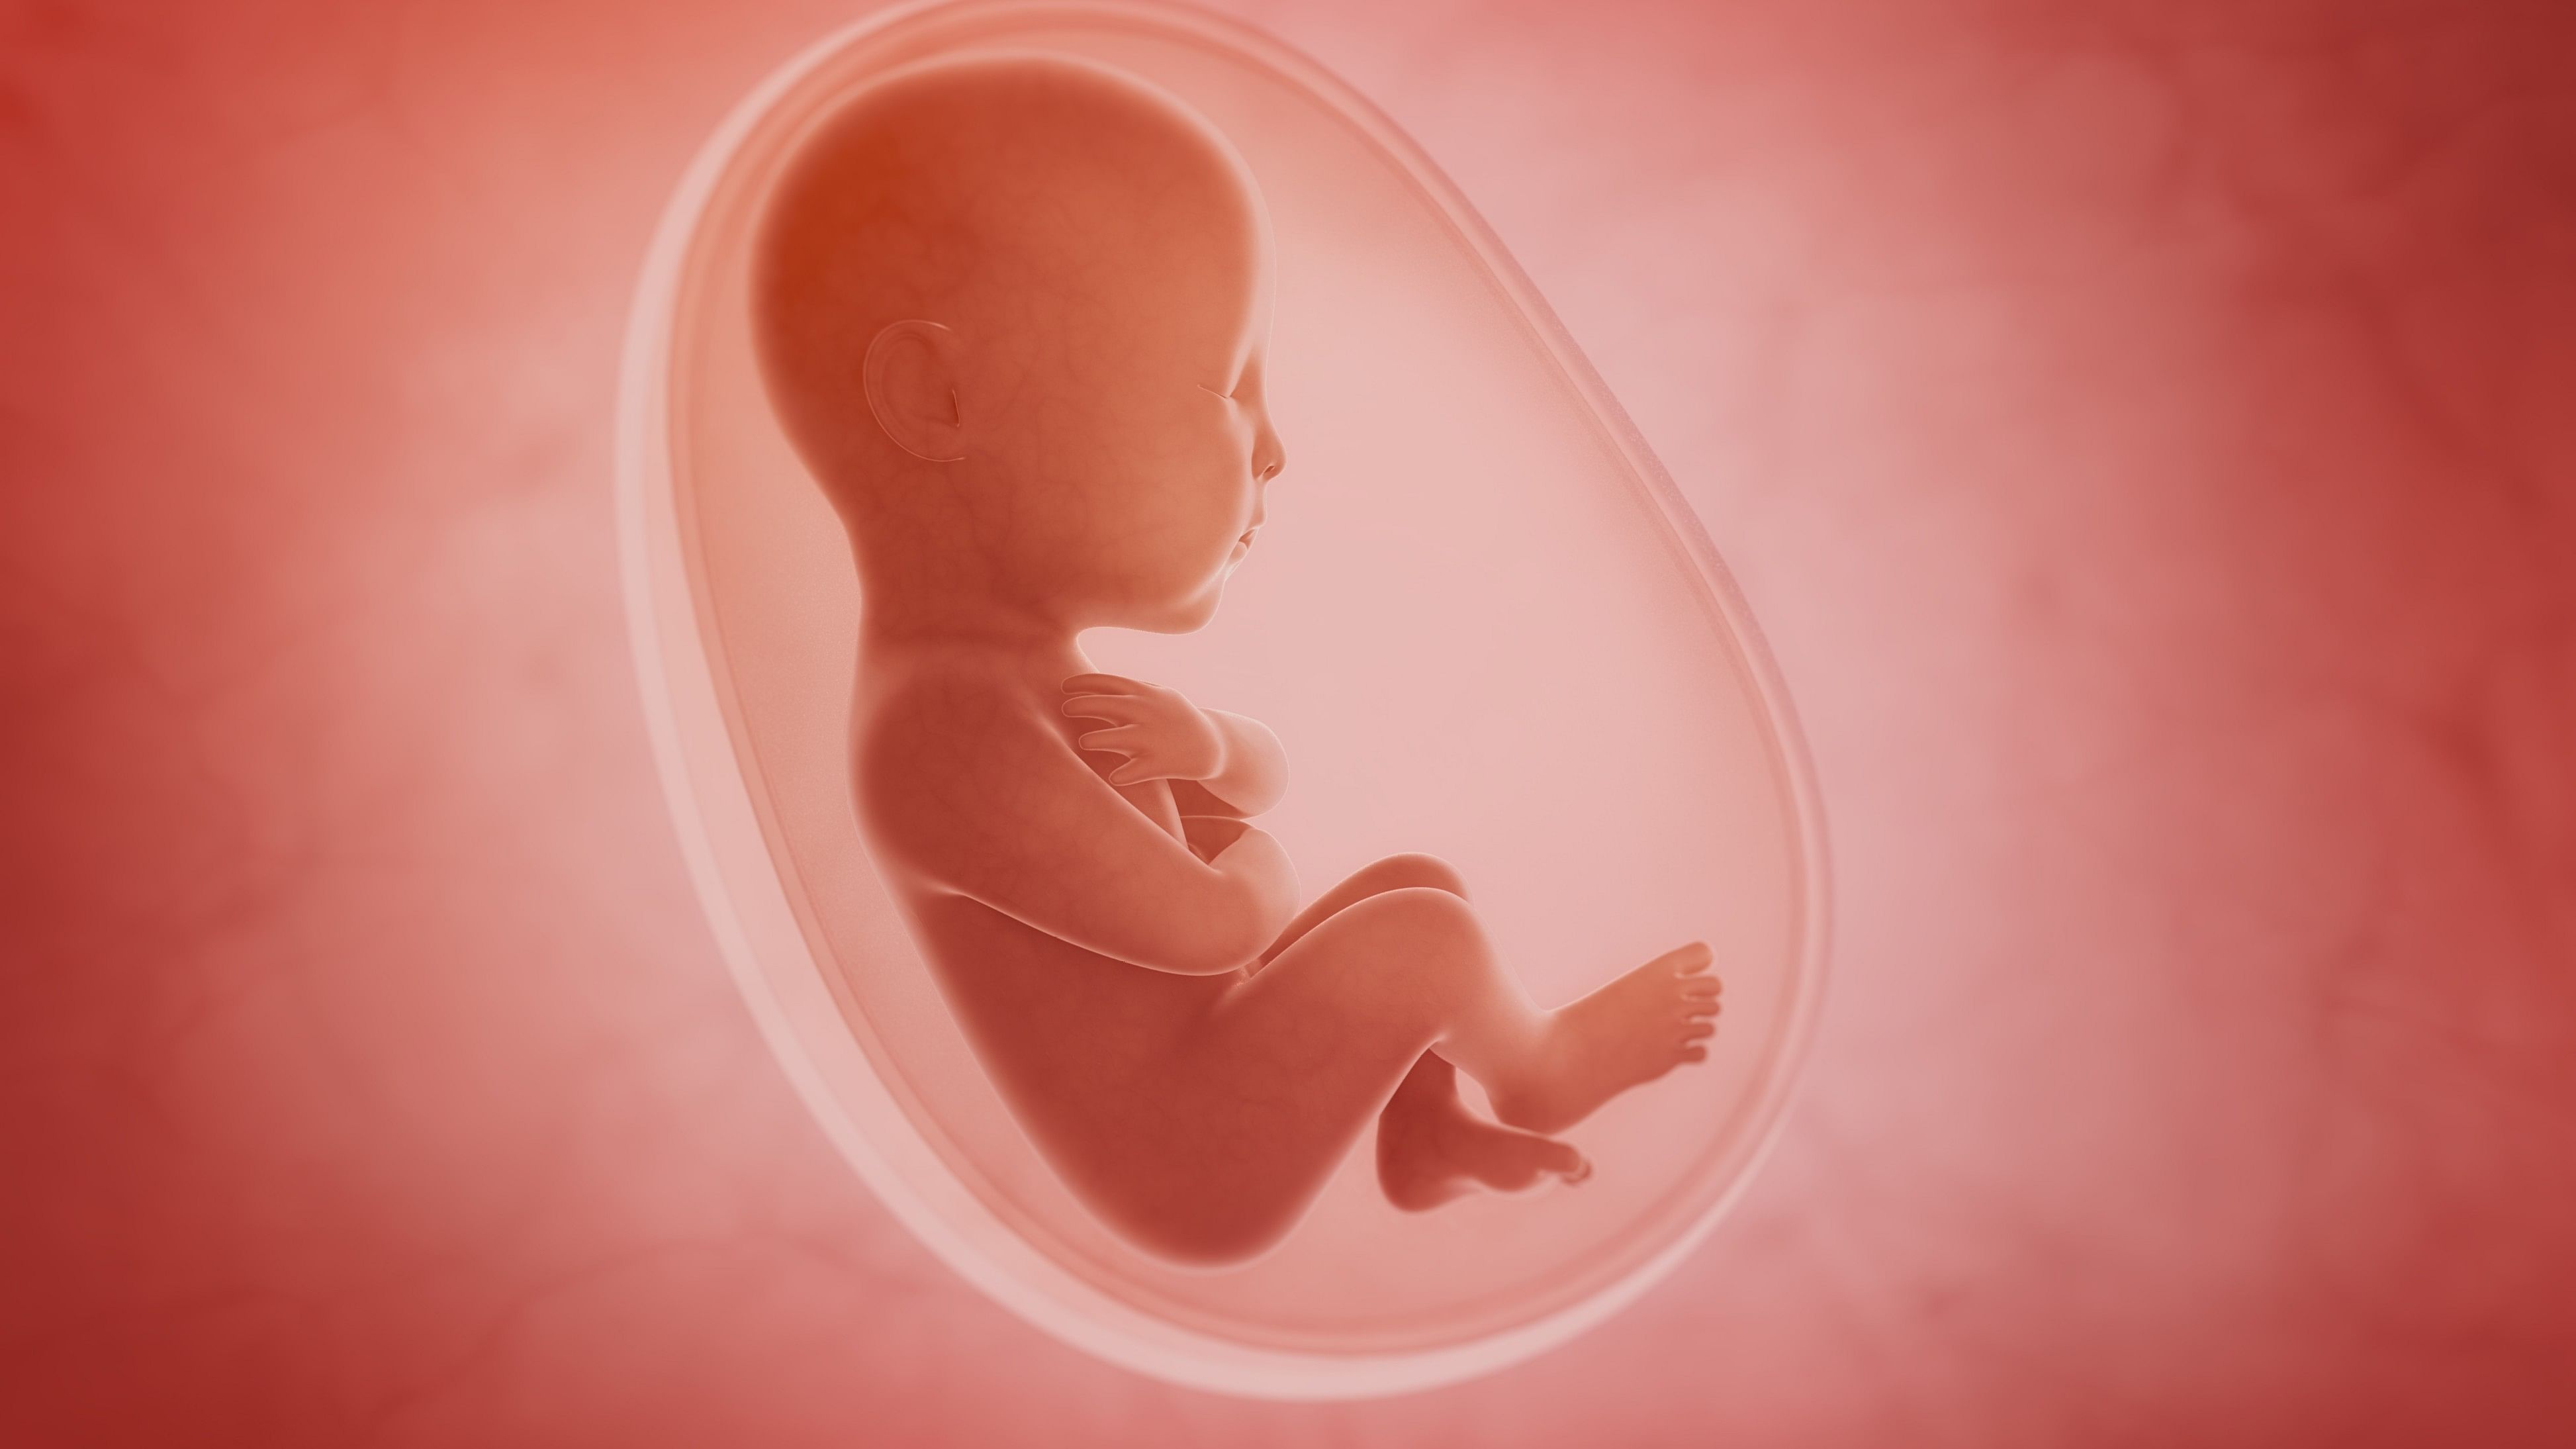 <div class="paragraphs"><p>Representative image of a foetus inside the womb.&nbsp;</p></div>